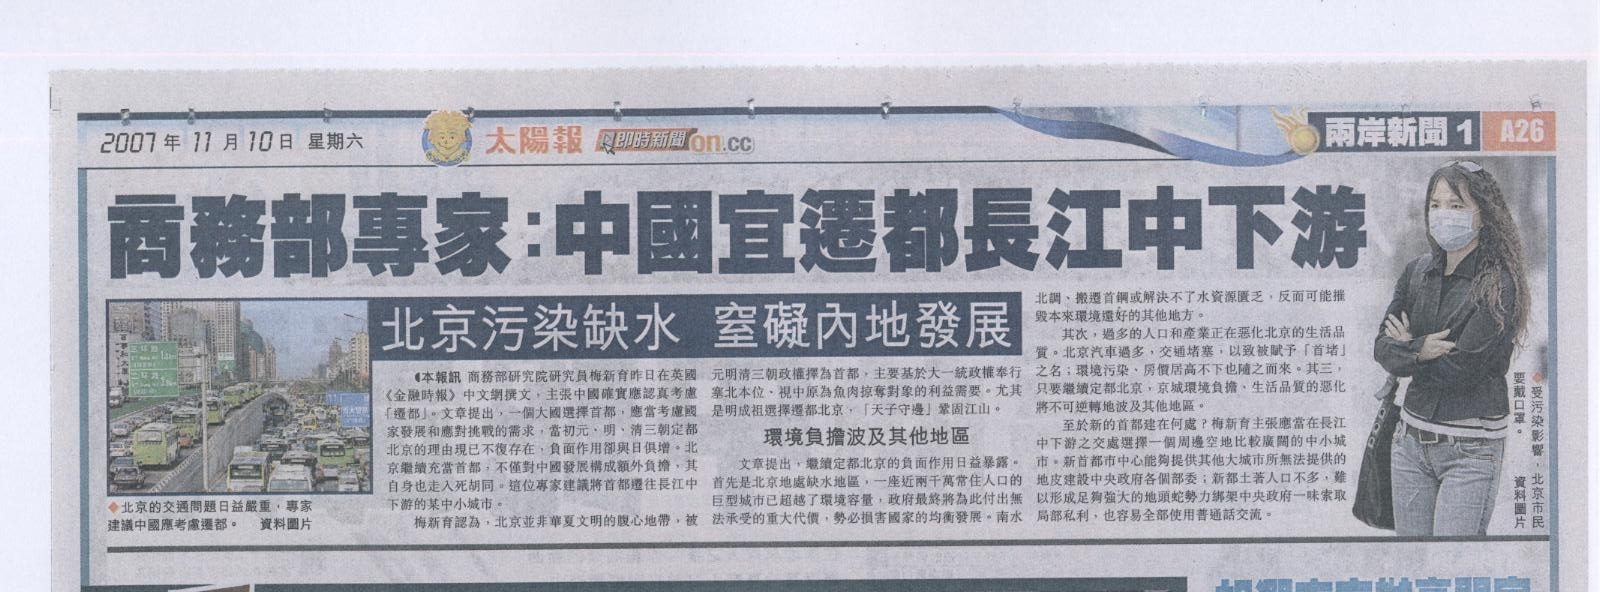 香港太陽日報2007年11月10日報道圖